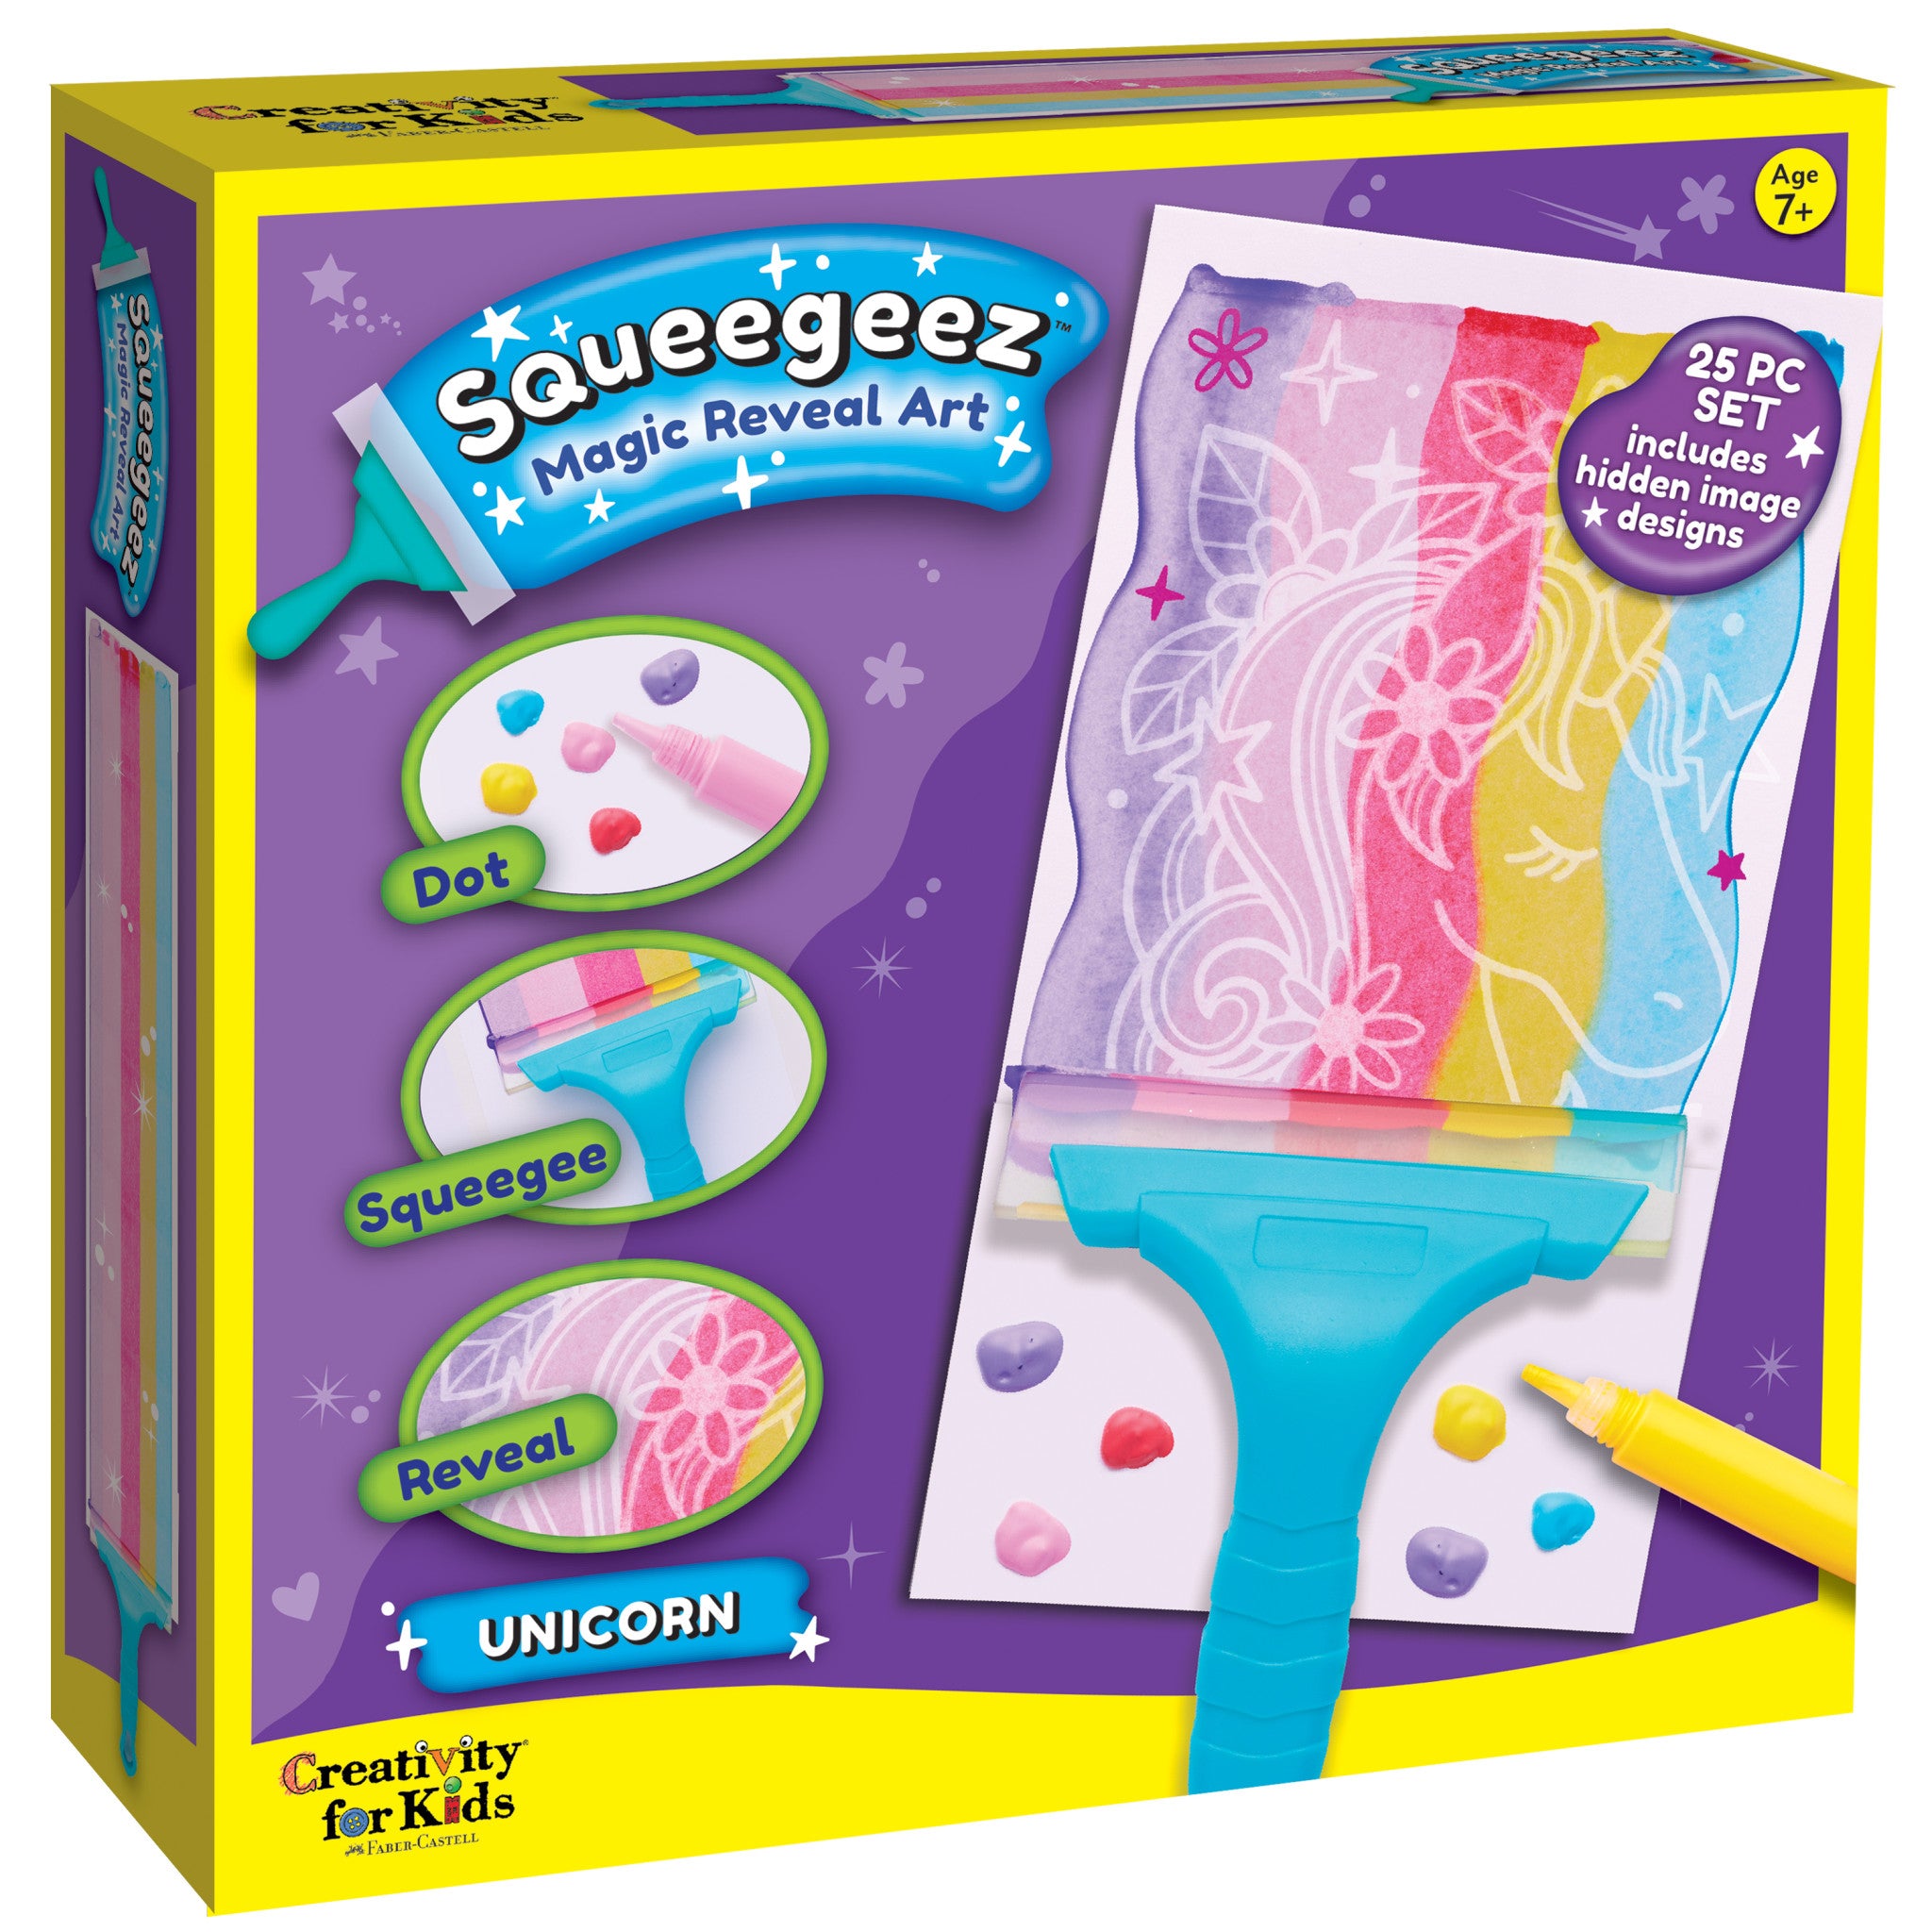 Scribbles Roller Kit, Kid Safe, Permanent Finger Paint, 7 Piece Set, Rainbow